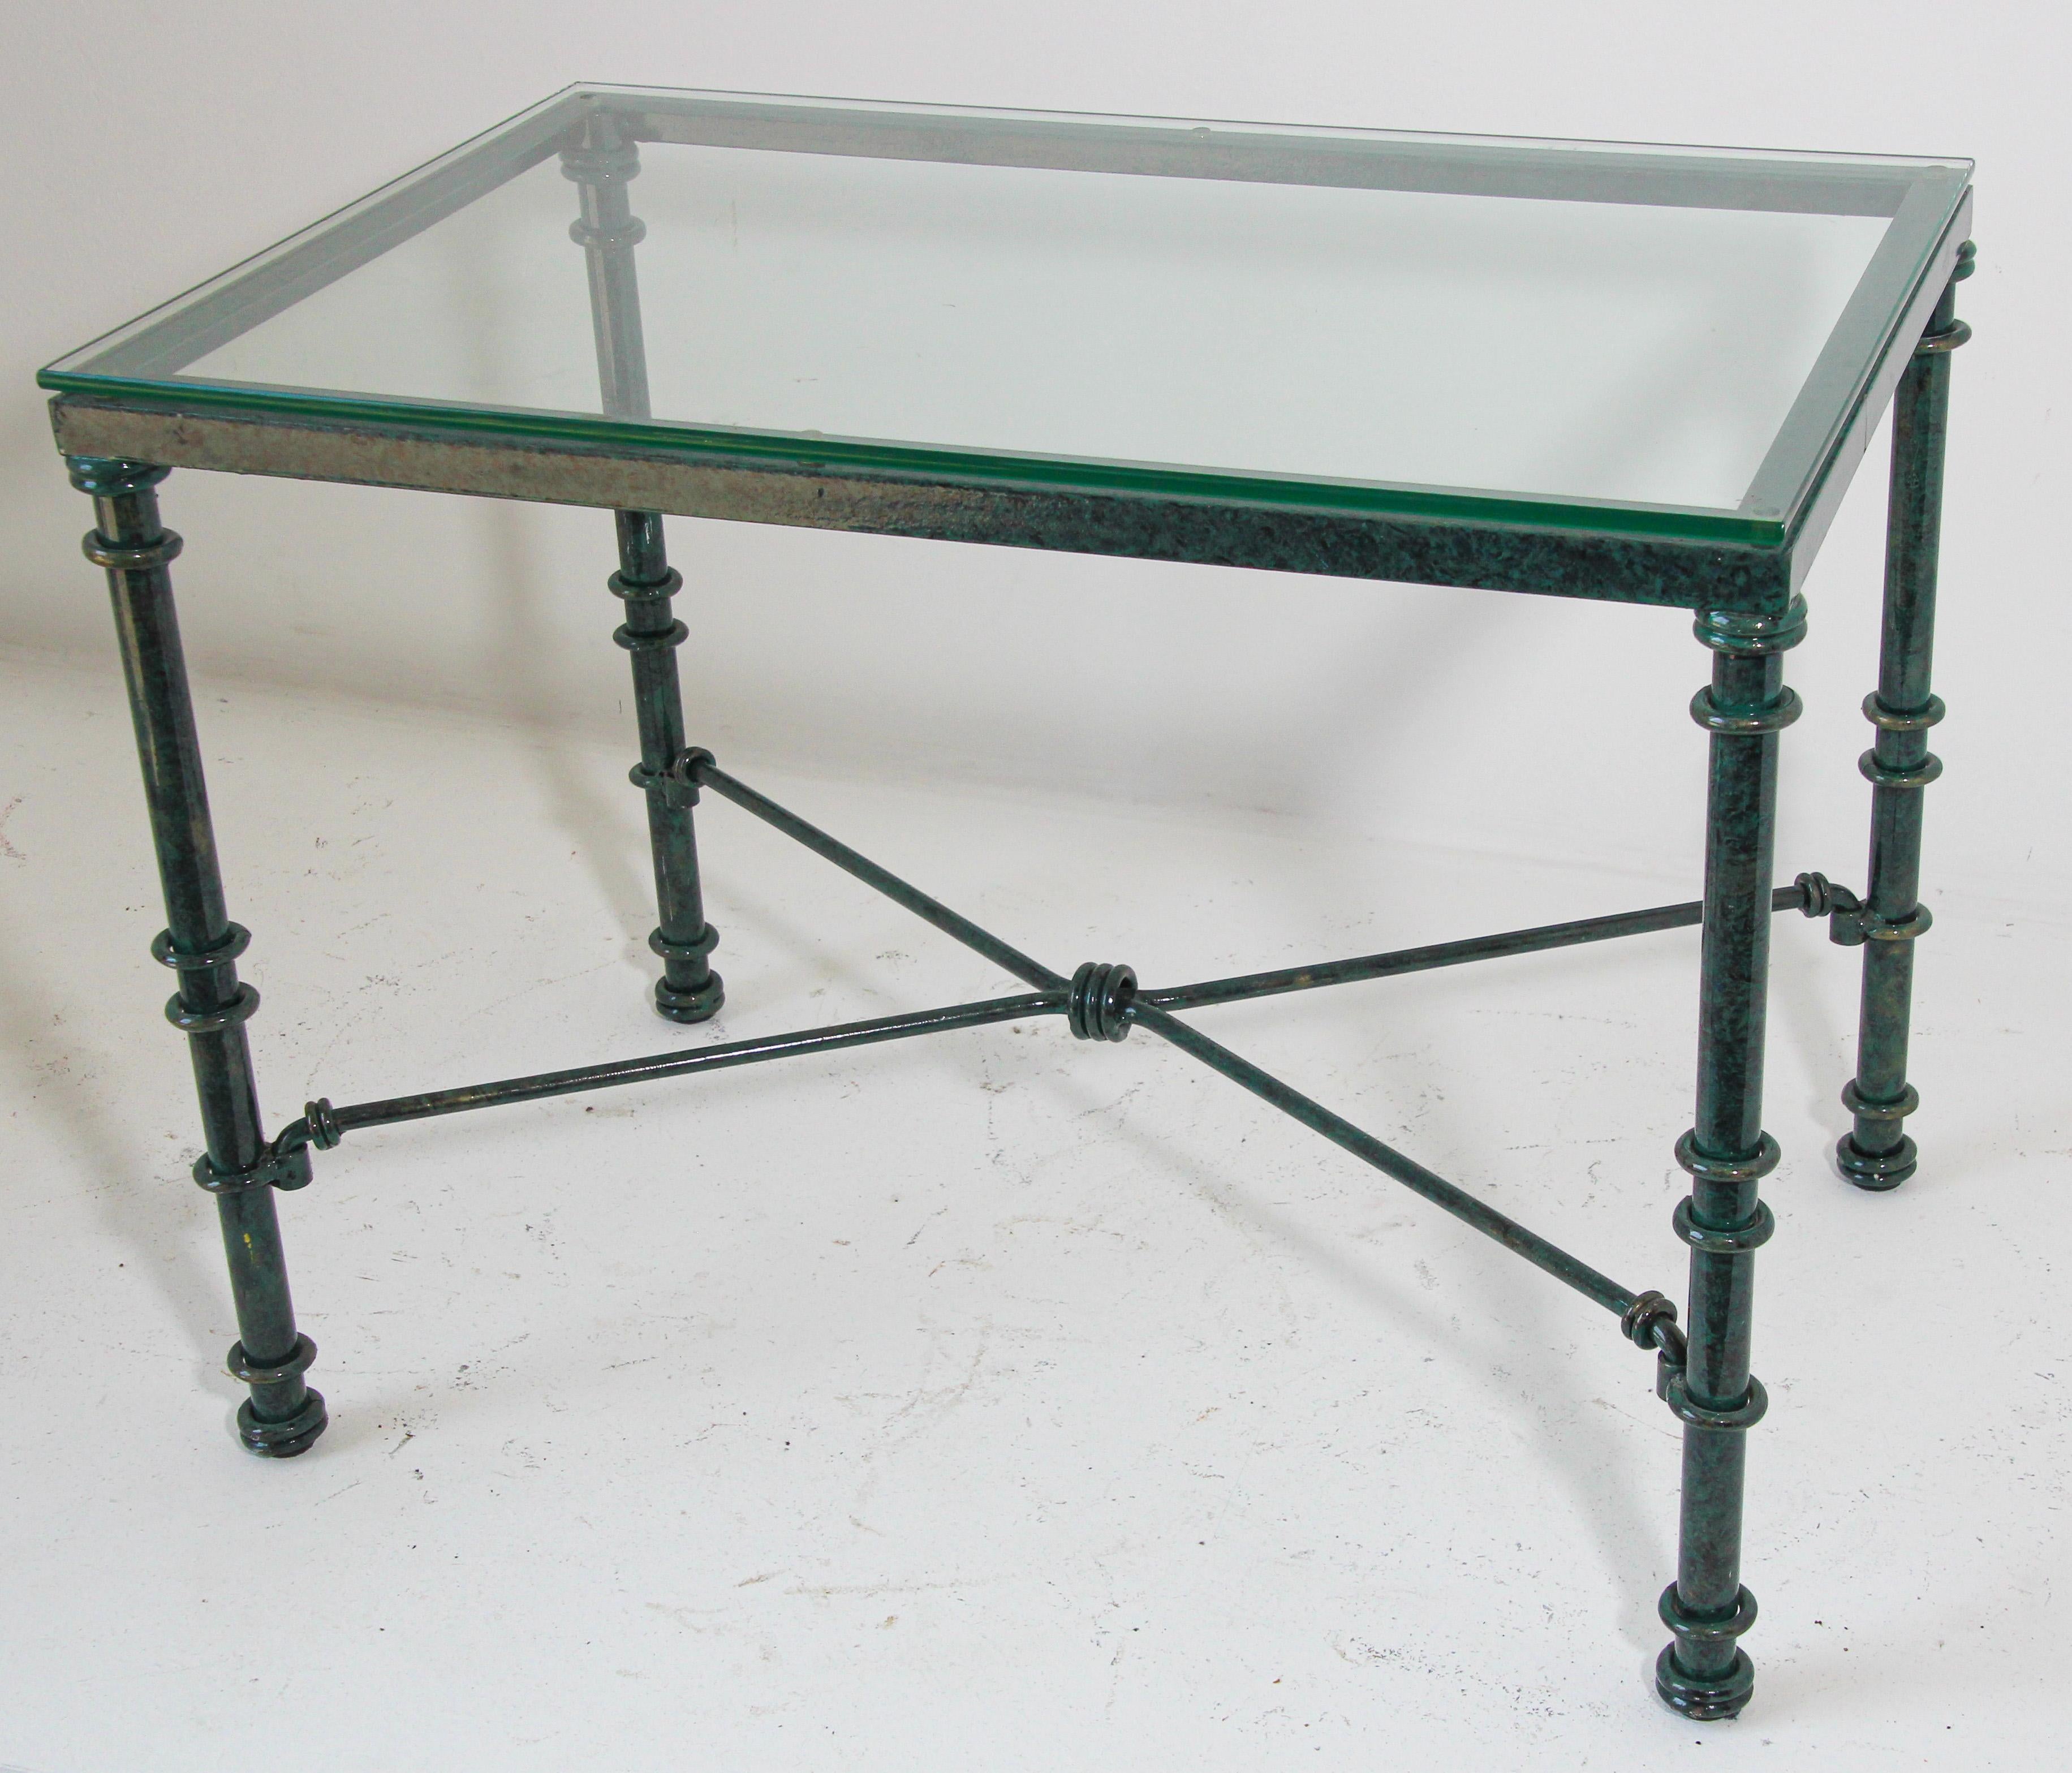 Table basse en métal et verre d'inspiration Giacometti avec une patine de peinture de style verdigris.

Table basse vintage, avec une base forgée en aluminium peint patiné avec un brancard central amovible en 